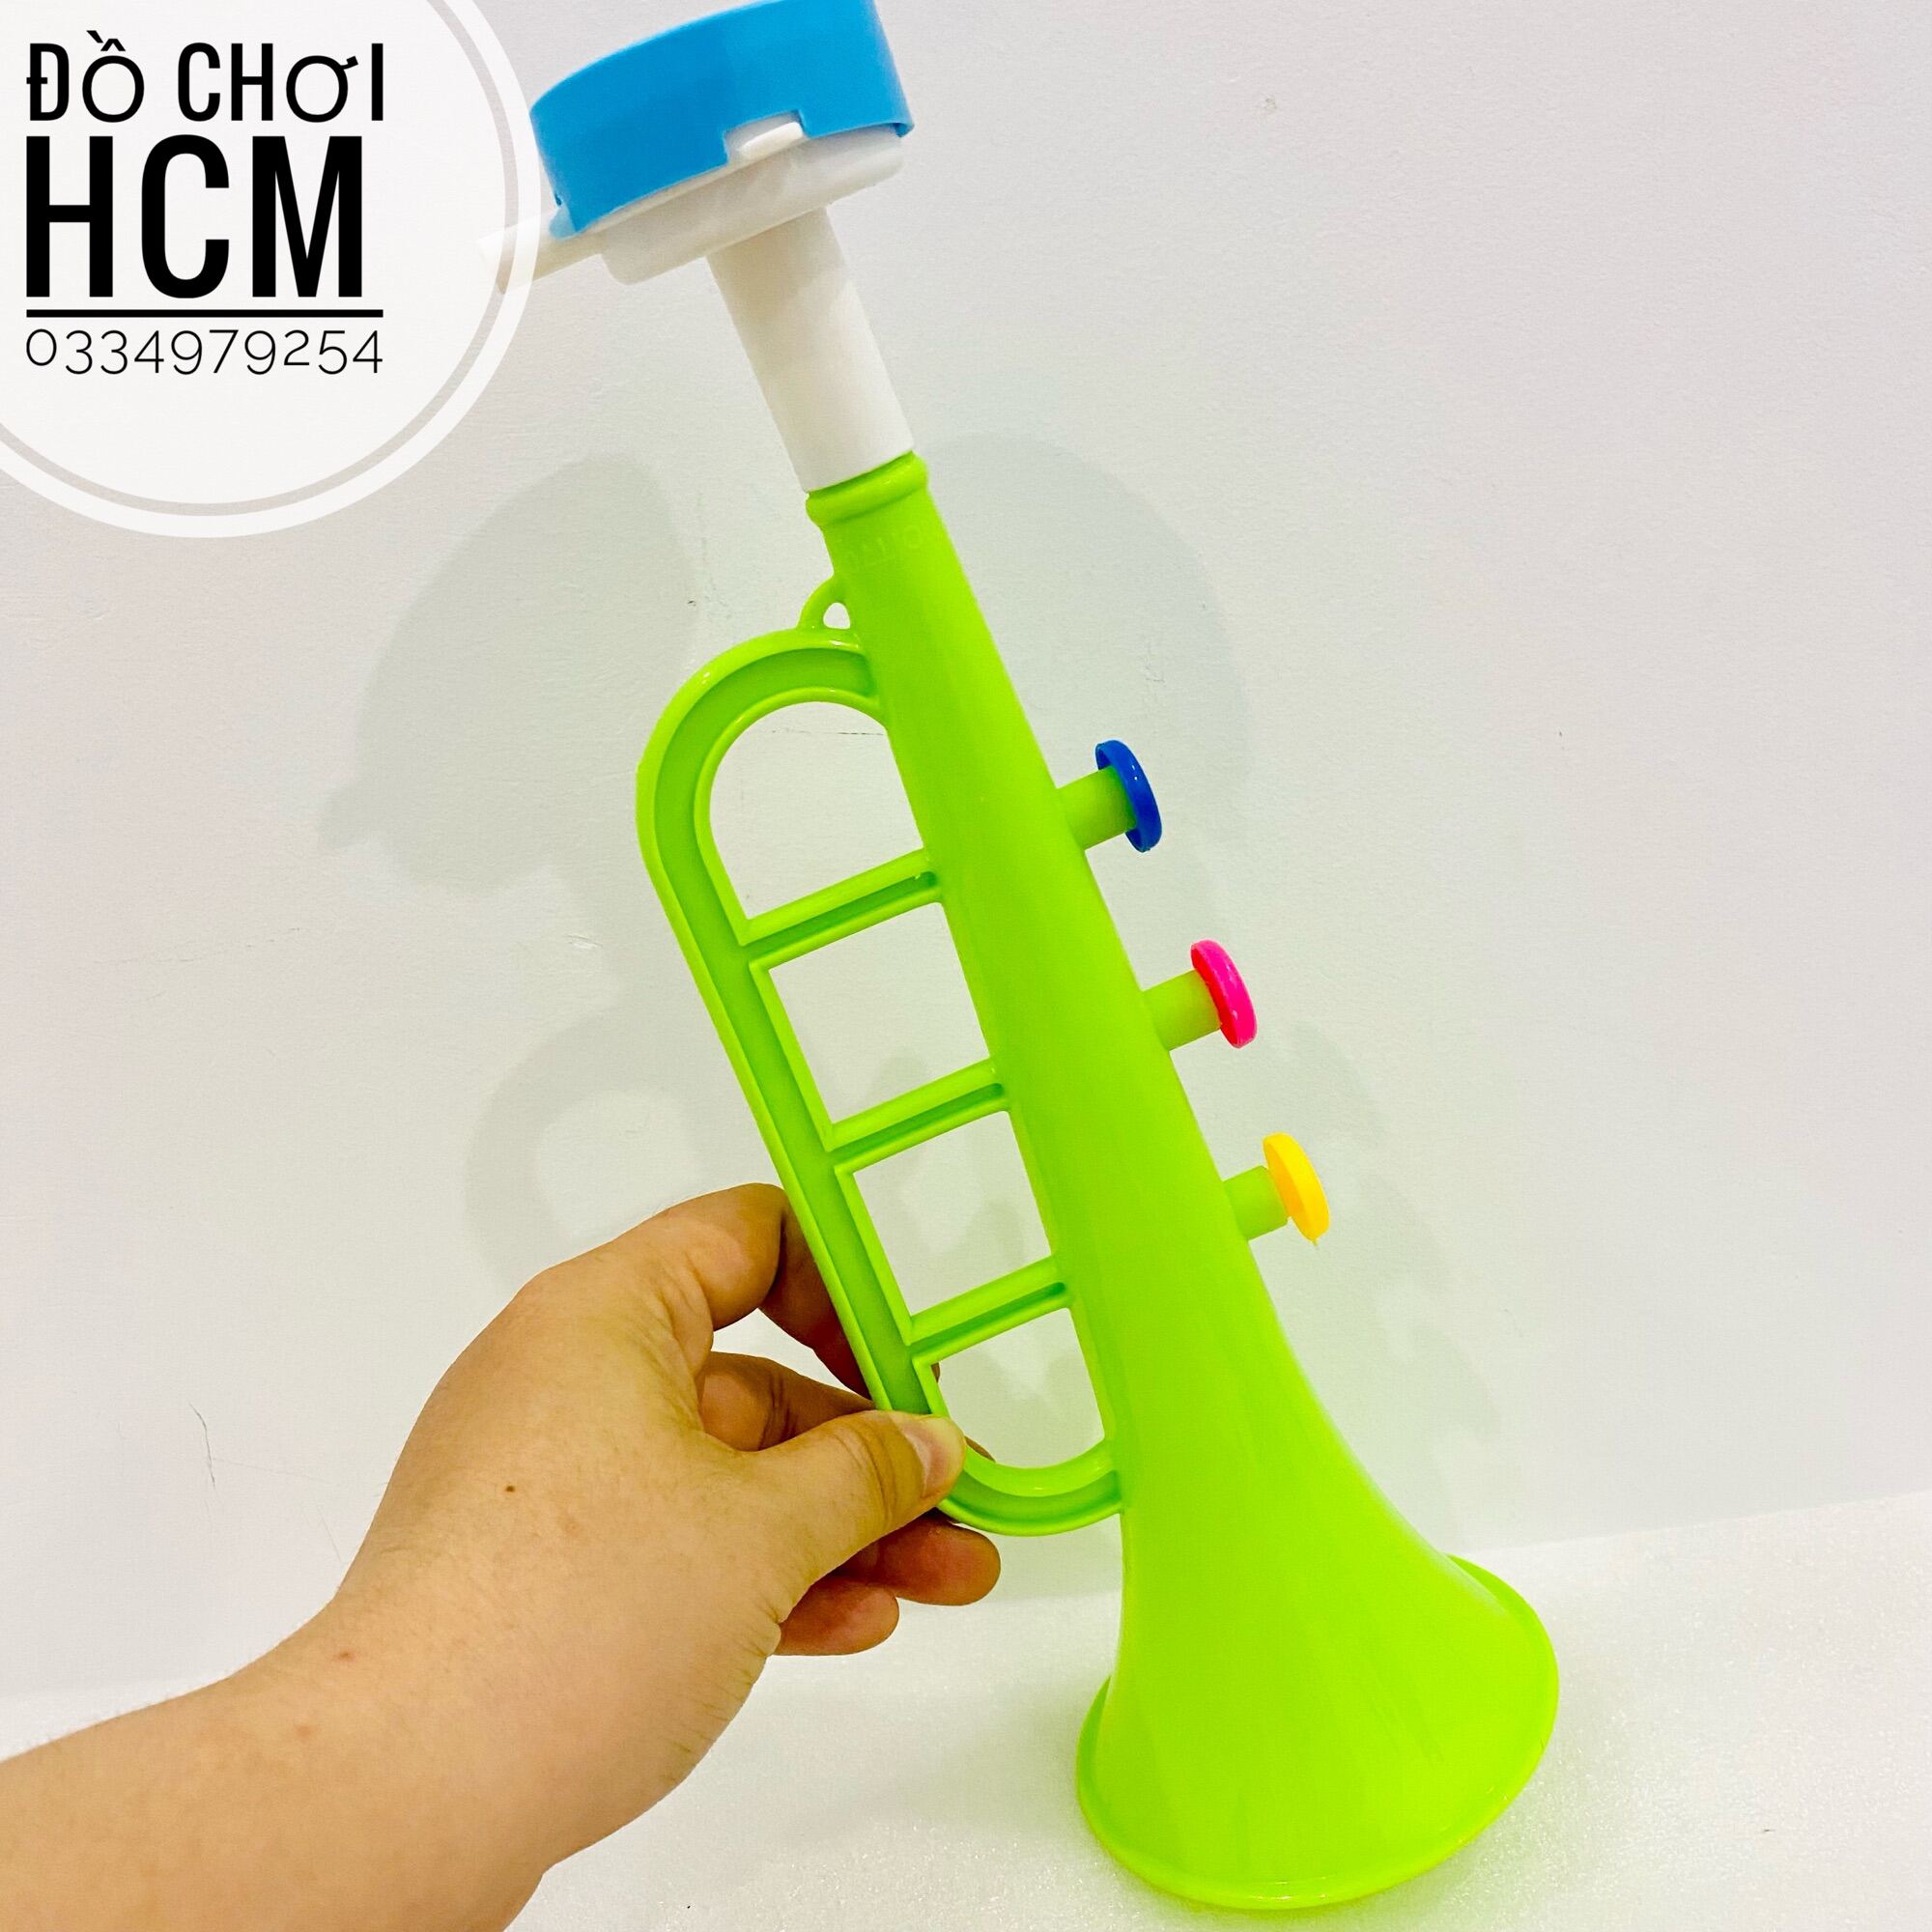 [RẺ ĐẸP] Đồ chơi trẻ em kèn trumpet dành cho bé thích khám phá các loại nhạc cụ, âm nhạc, cổ vũ, cổ động bóng đá